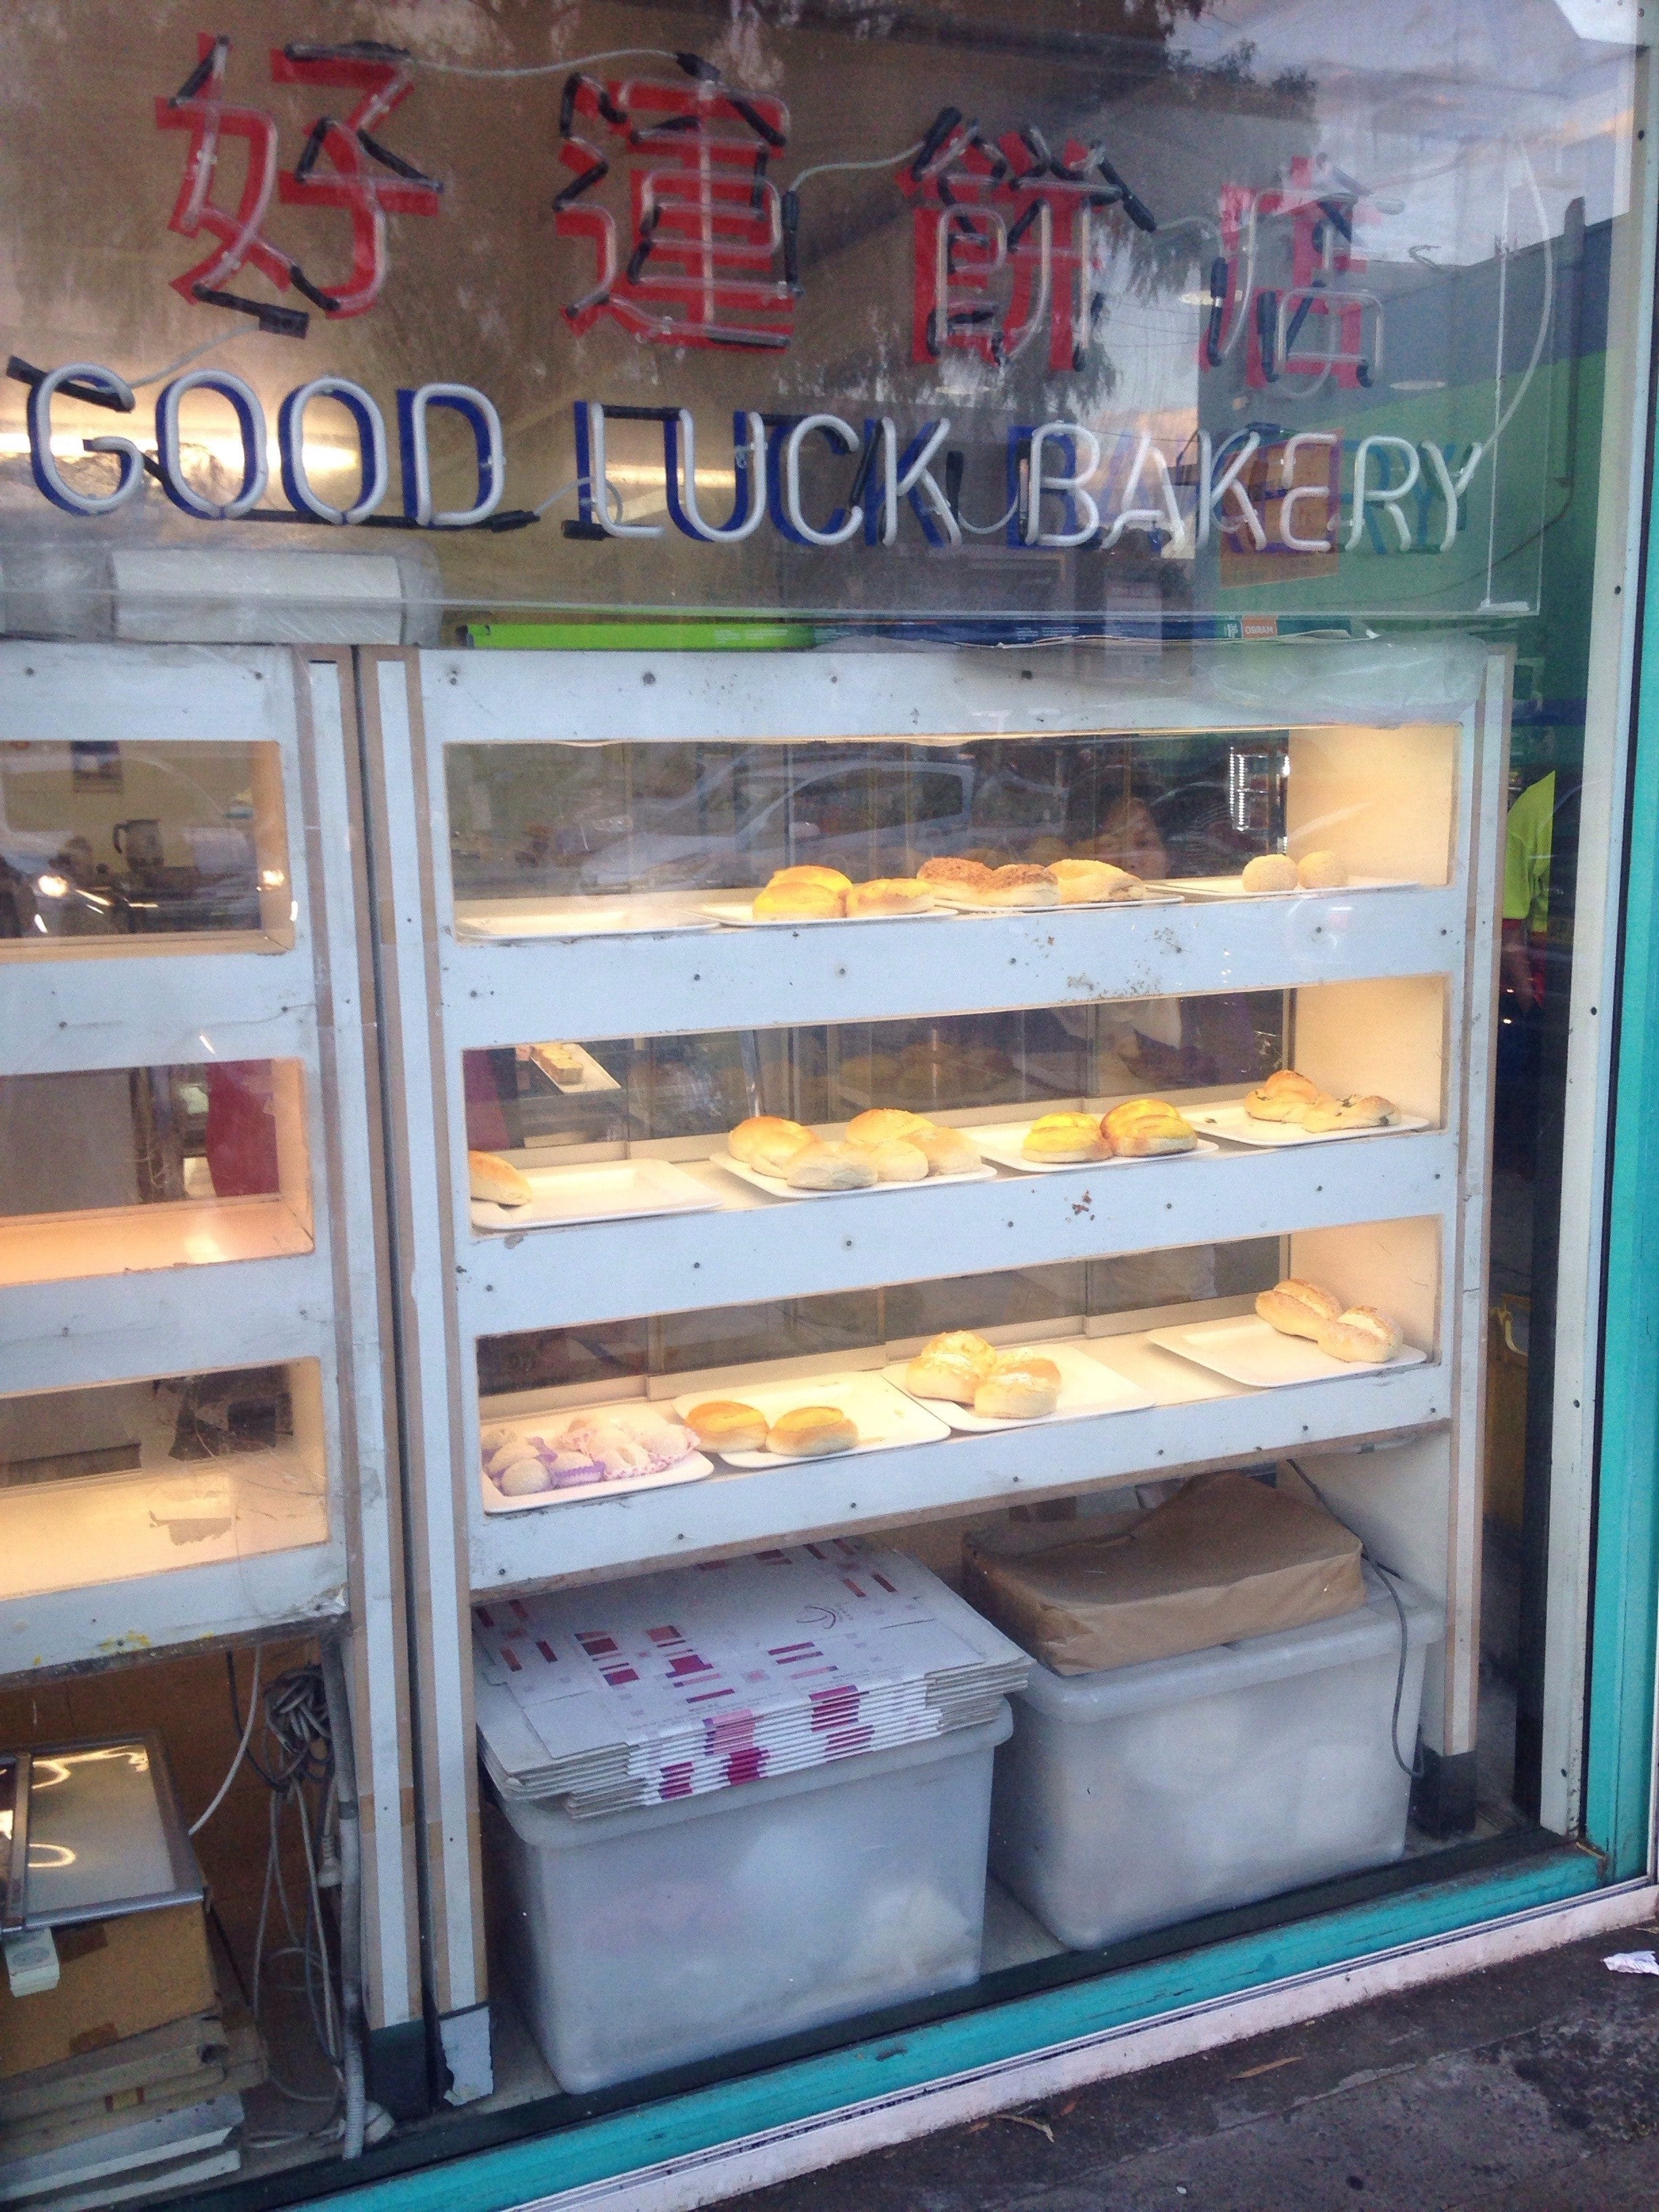 Luck luck bakery